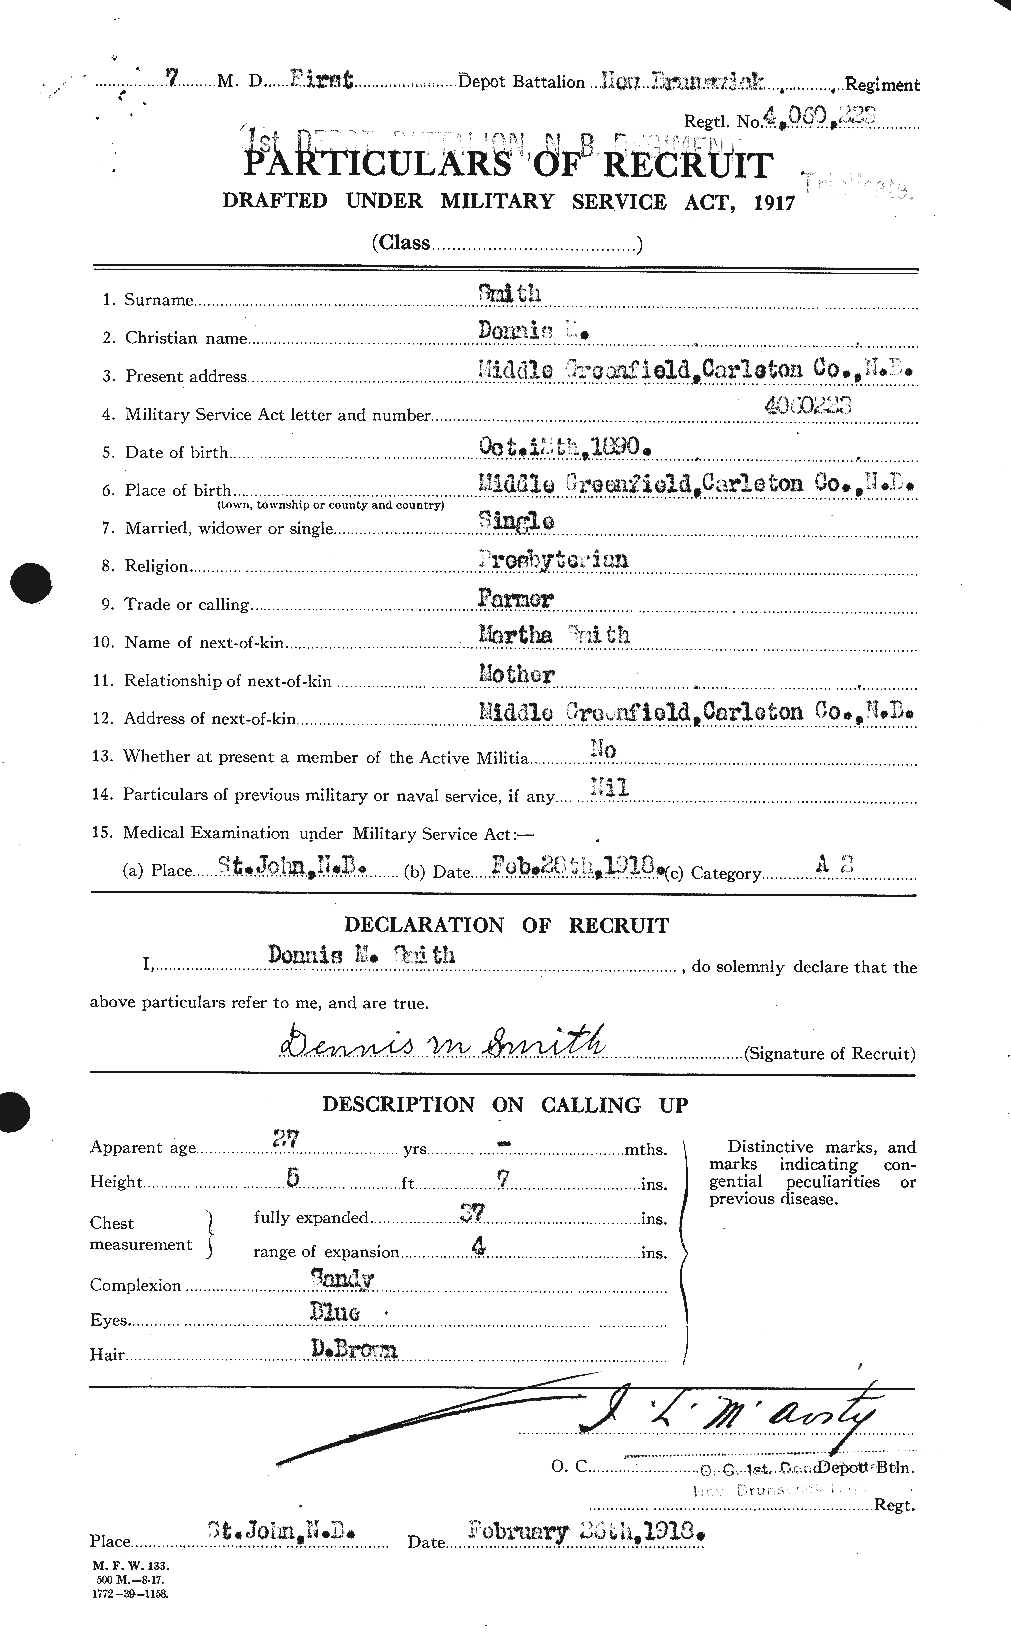 Dossiers du Personnel de la Première Guerre mondiale - CEC 102031a